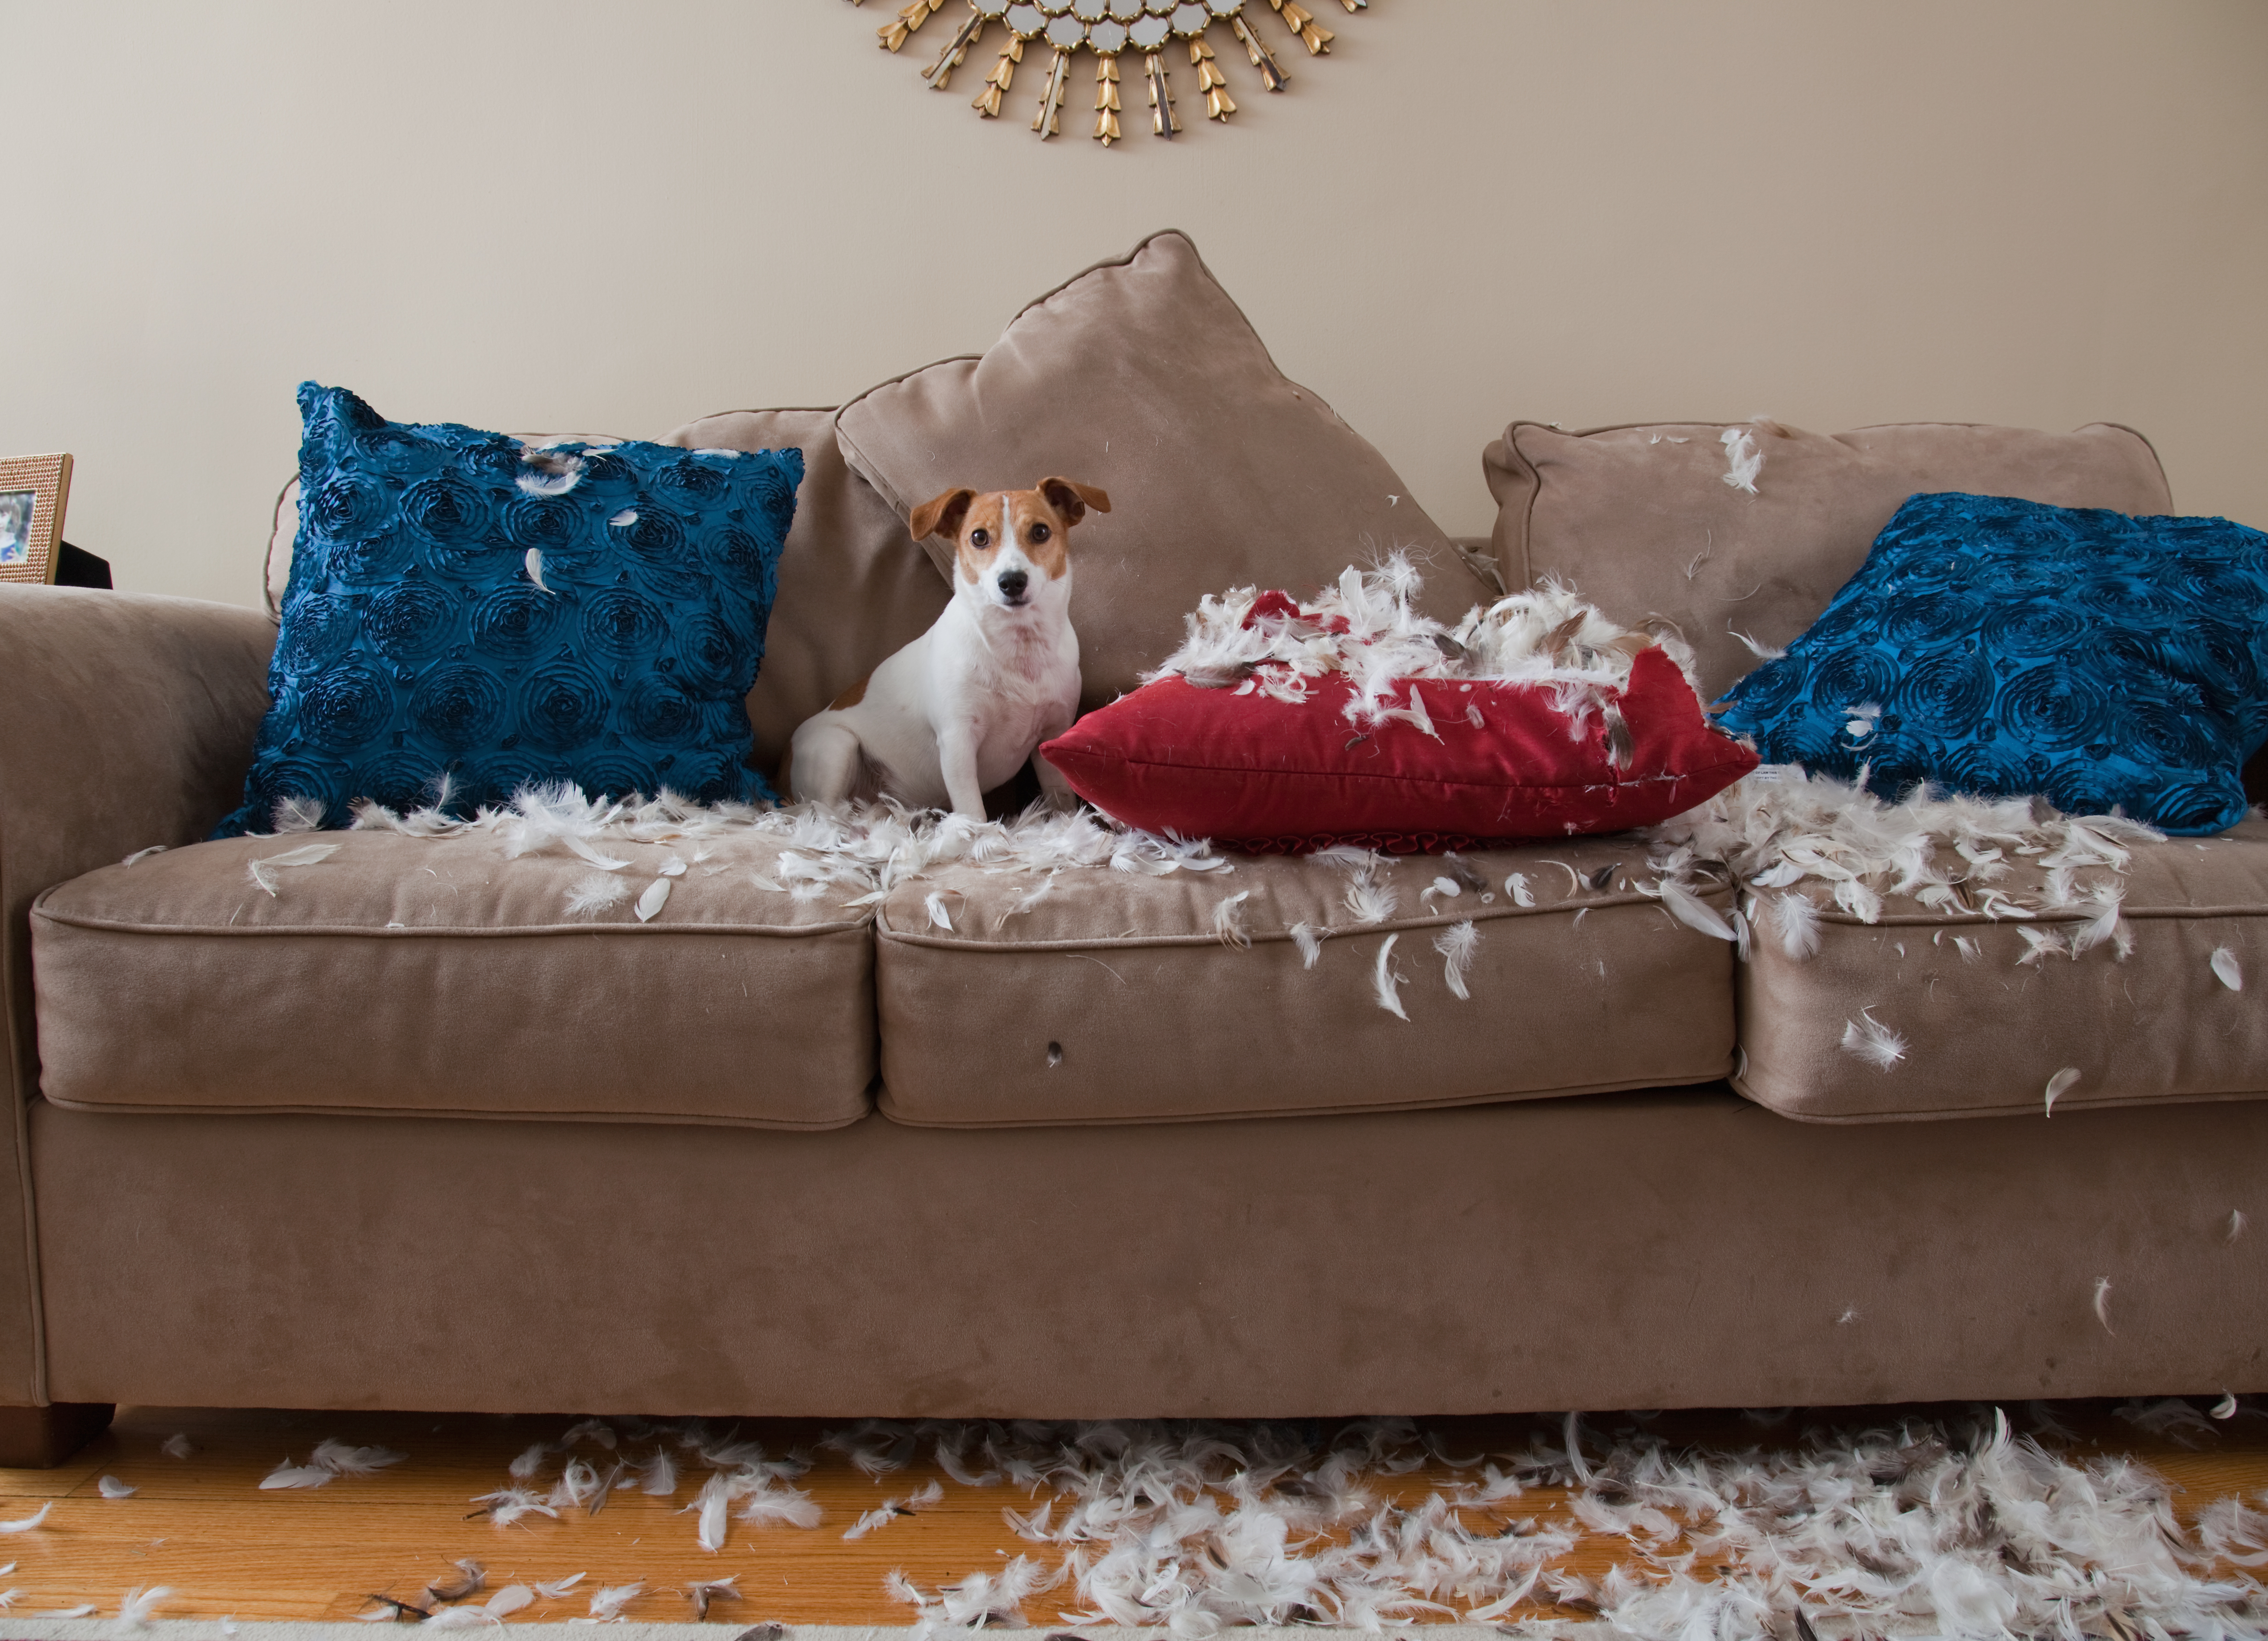 End up living. Диван для собаки. Мебель мягкая для домашних питомцев. Рваный диван. Собака на рваном диване.